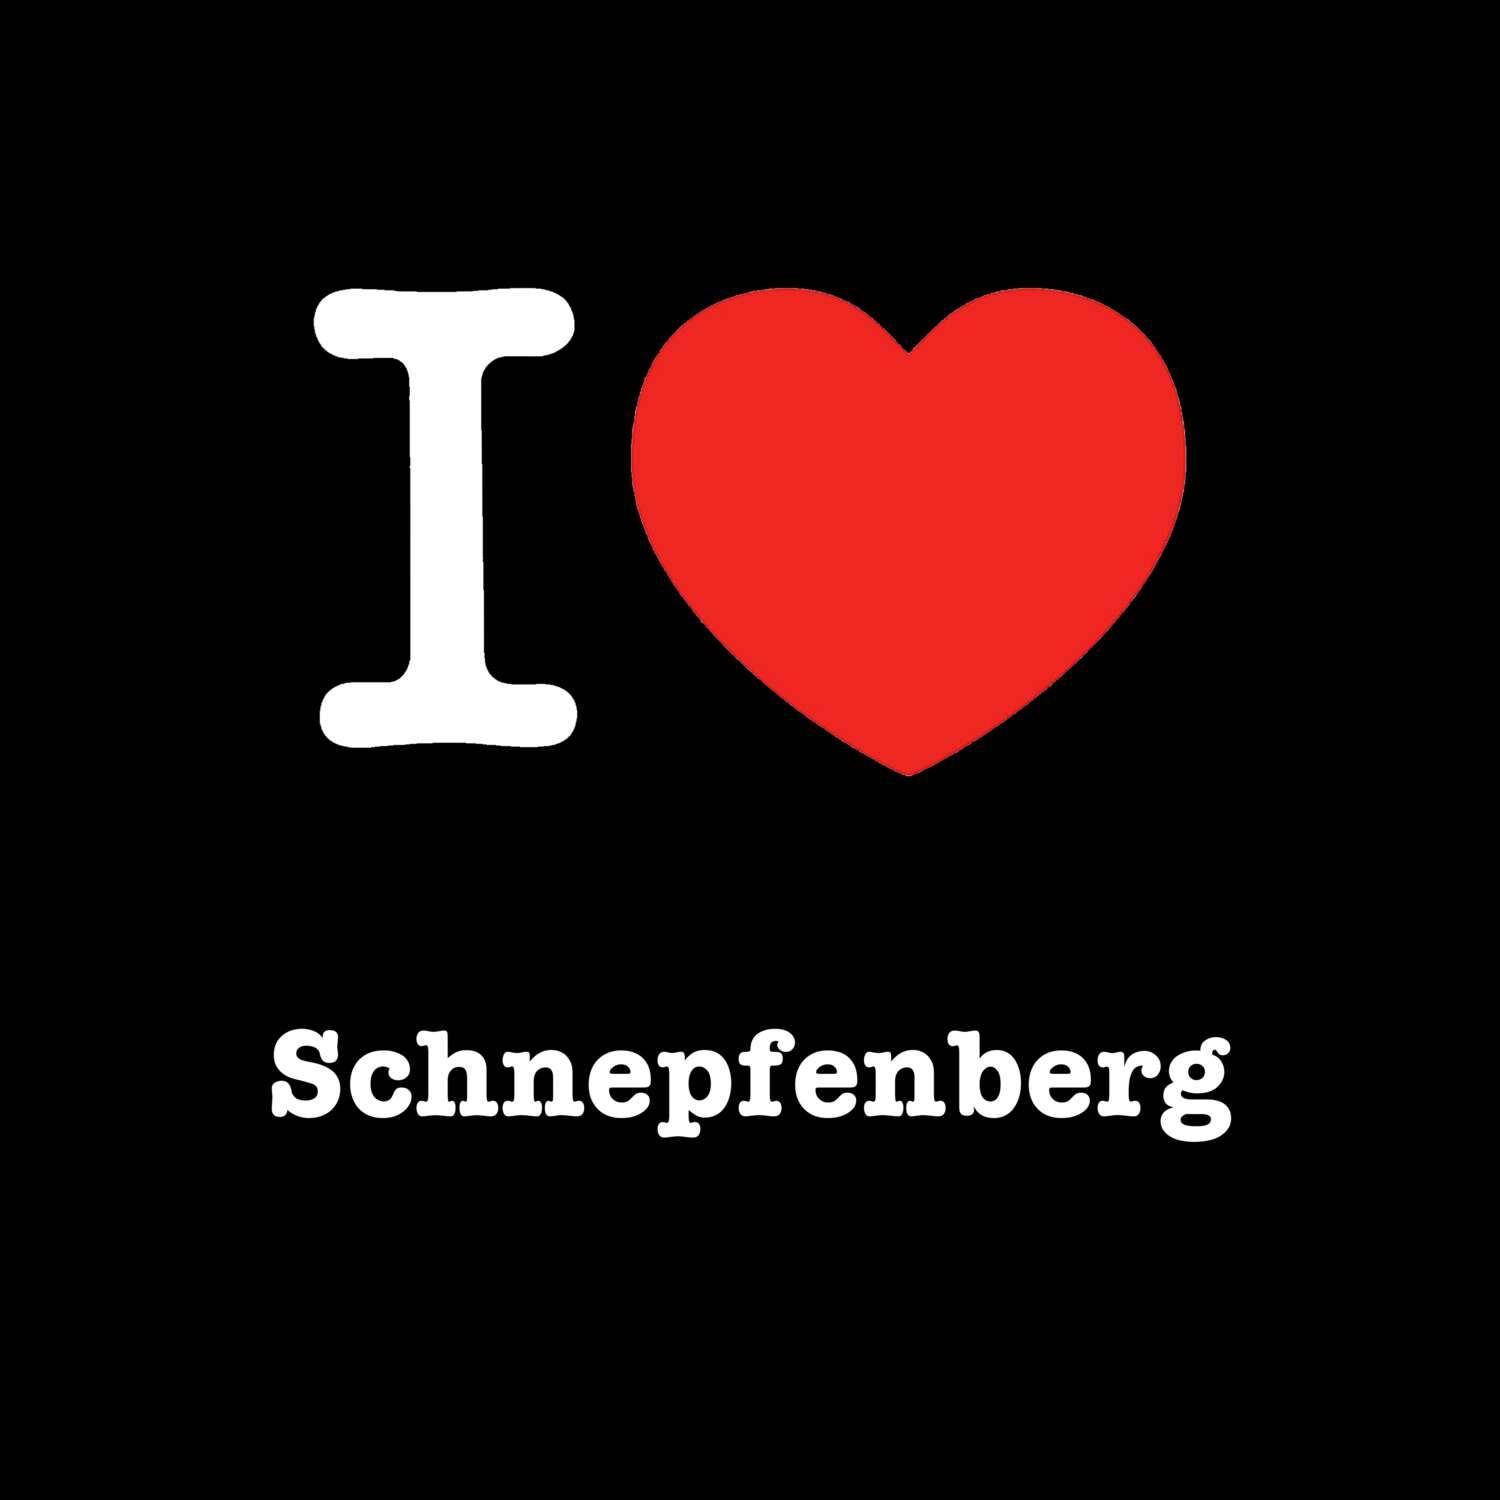 Schnepfenberg T-Shirt »I love«